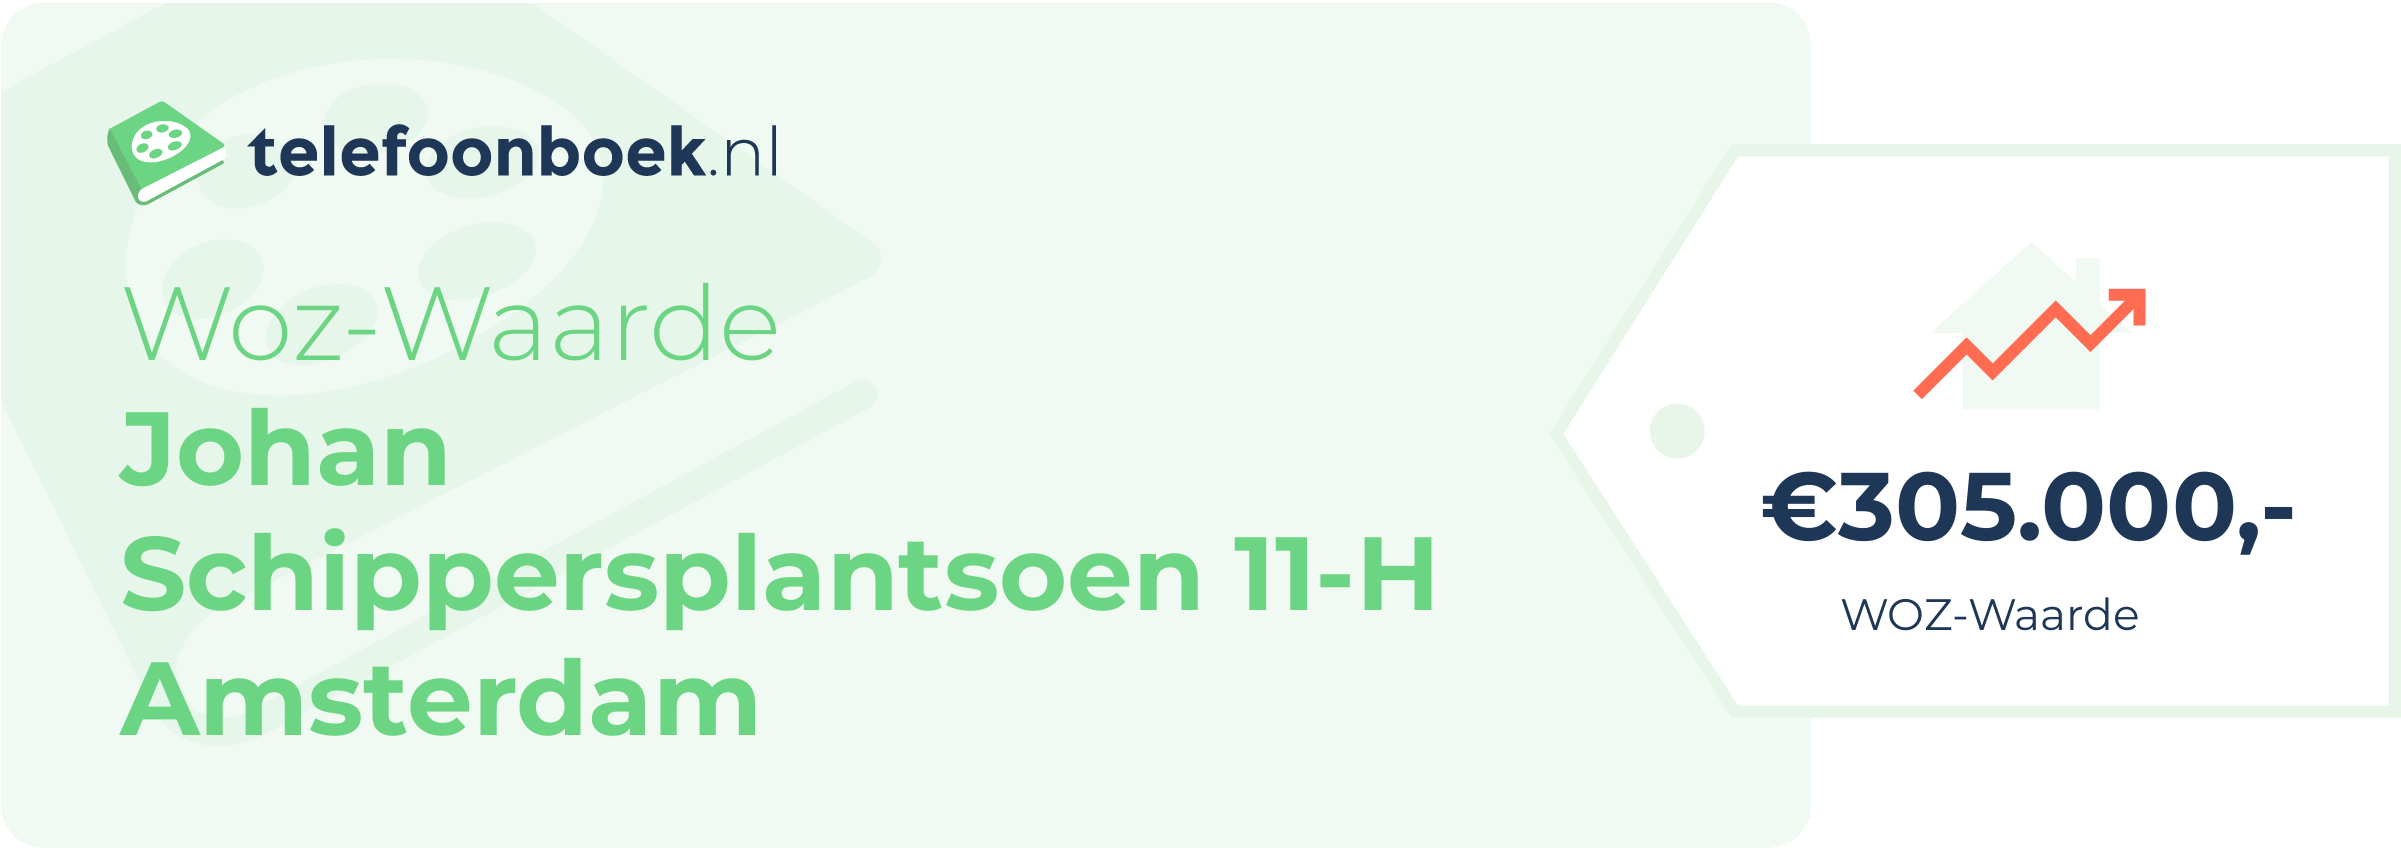 WOZ-waarde Johan Schippersplantsoen 11-H Amsterdam